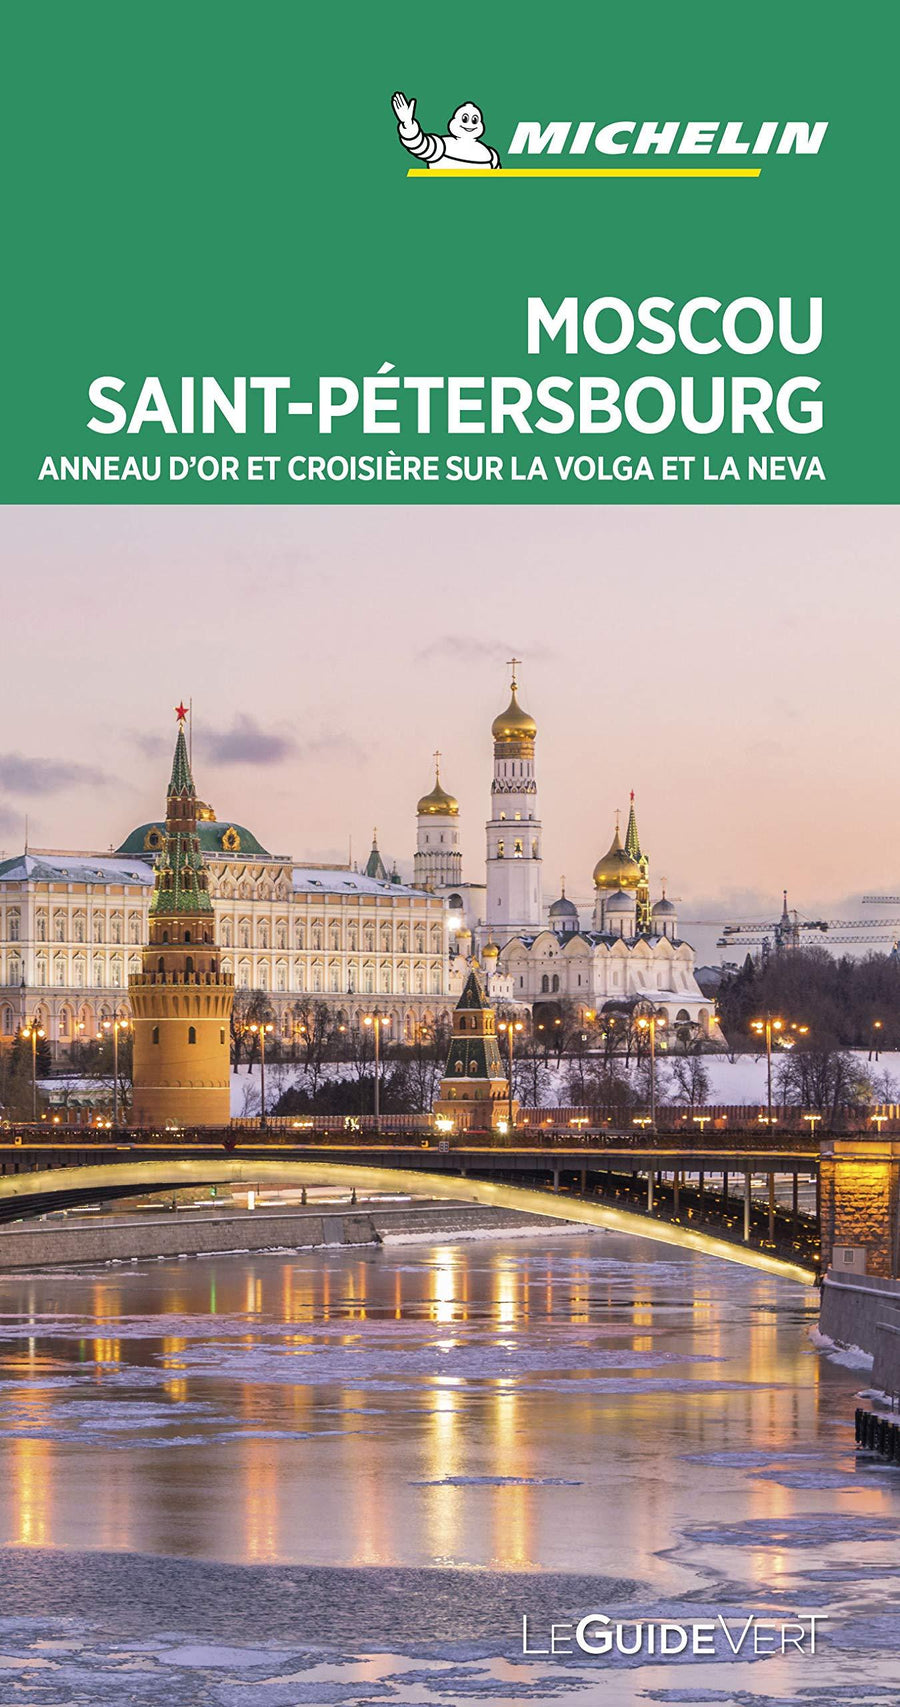 Guide Vert - Moscou, St-Pétersbourg (Anneau d'or et croisière sur la Volga et la Neva) - Édition 2020 | Michelin guide de voyage Michelin 